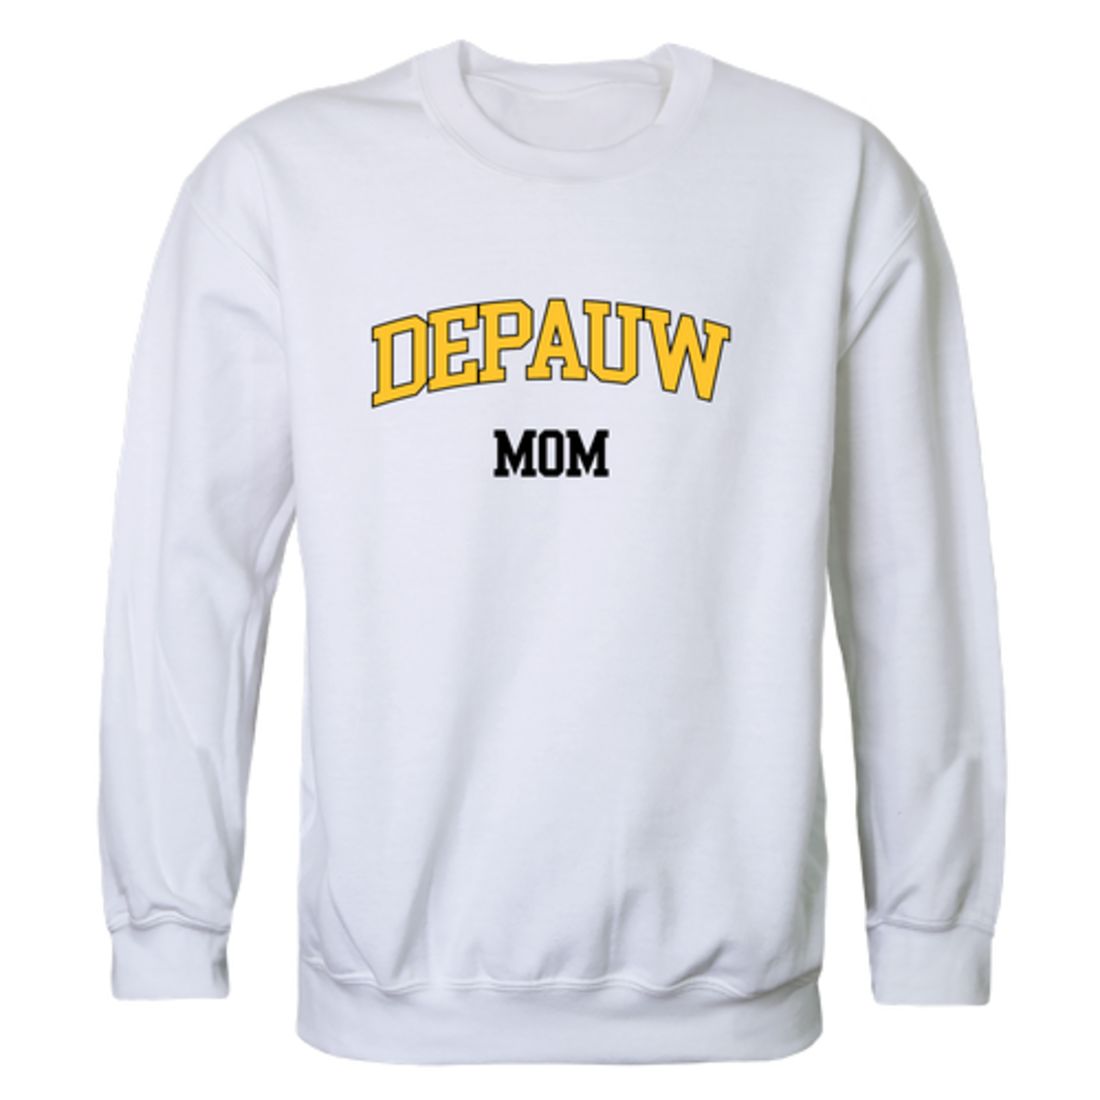 DePauw University Tigers Mom Fleece Crewneck Pullover Sweatshirt